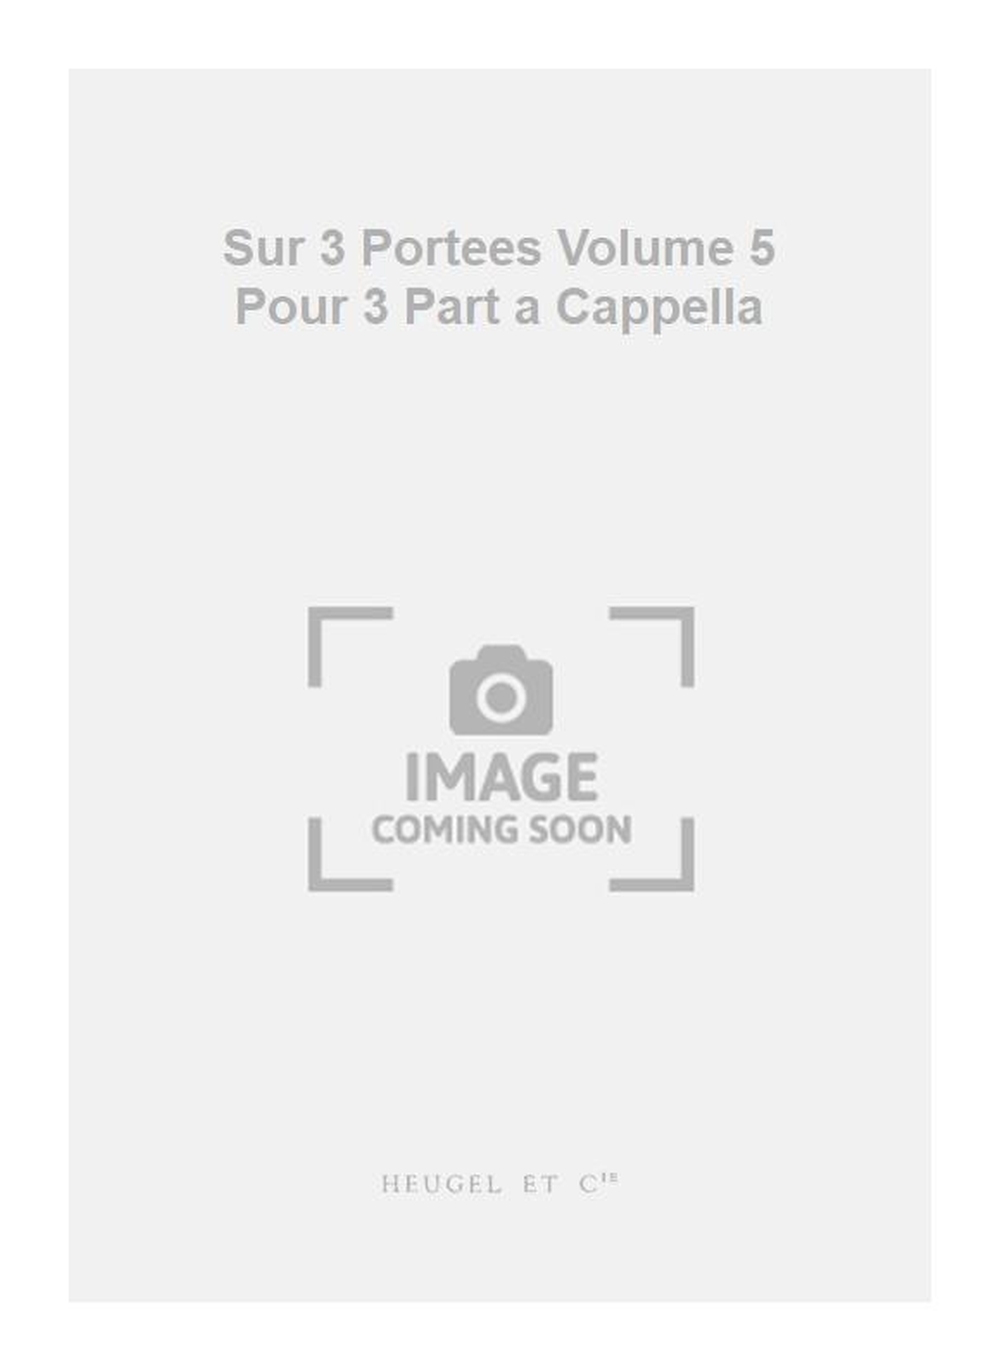 Georges Aubanel: Sur 3 Portees Volume 5 Pour 3 Part a Cappella